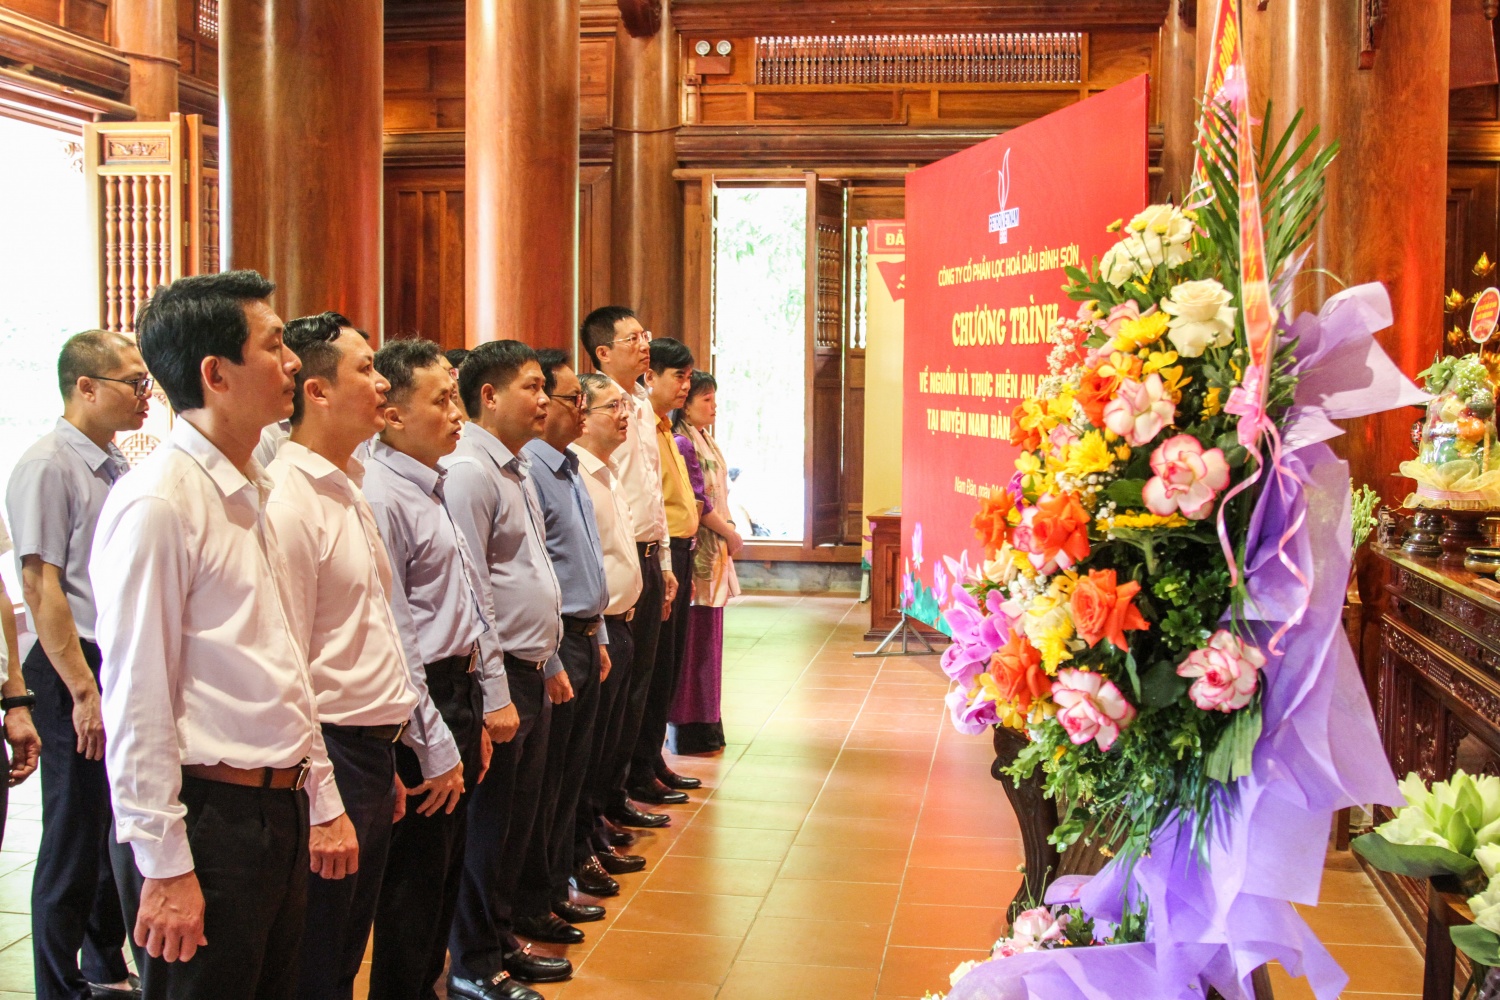 BSR tổ chức về nguồn và thực hiện an sinh xã hội tại quê hương Chủ tịch Hồ Chí Minh